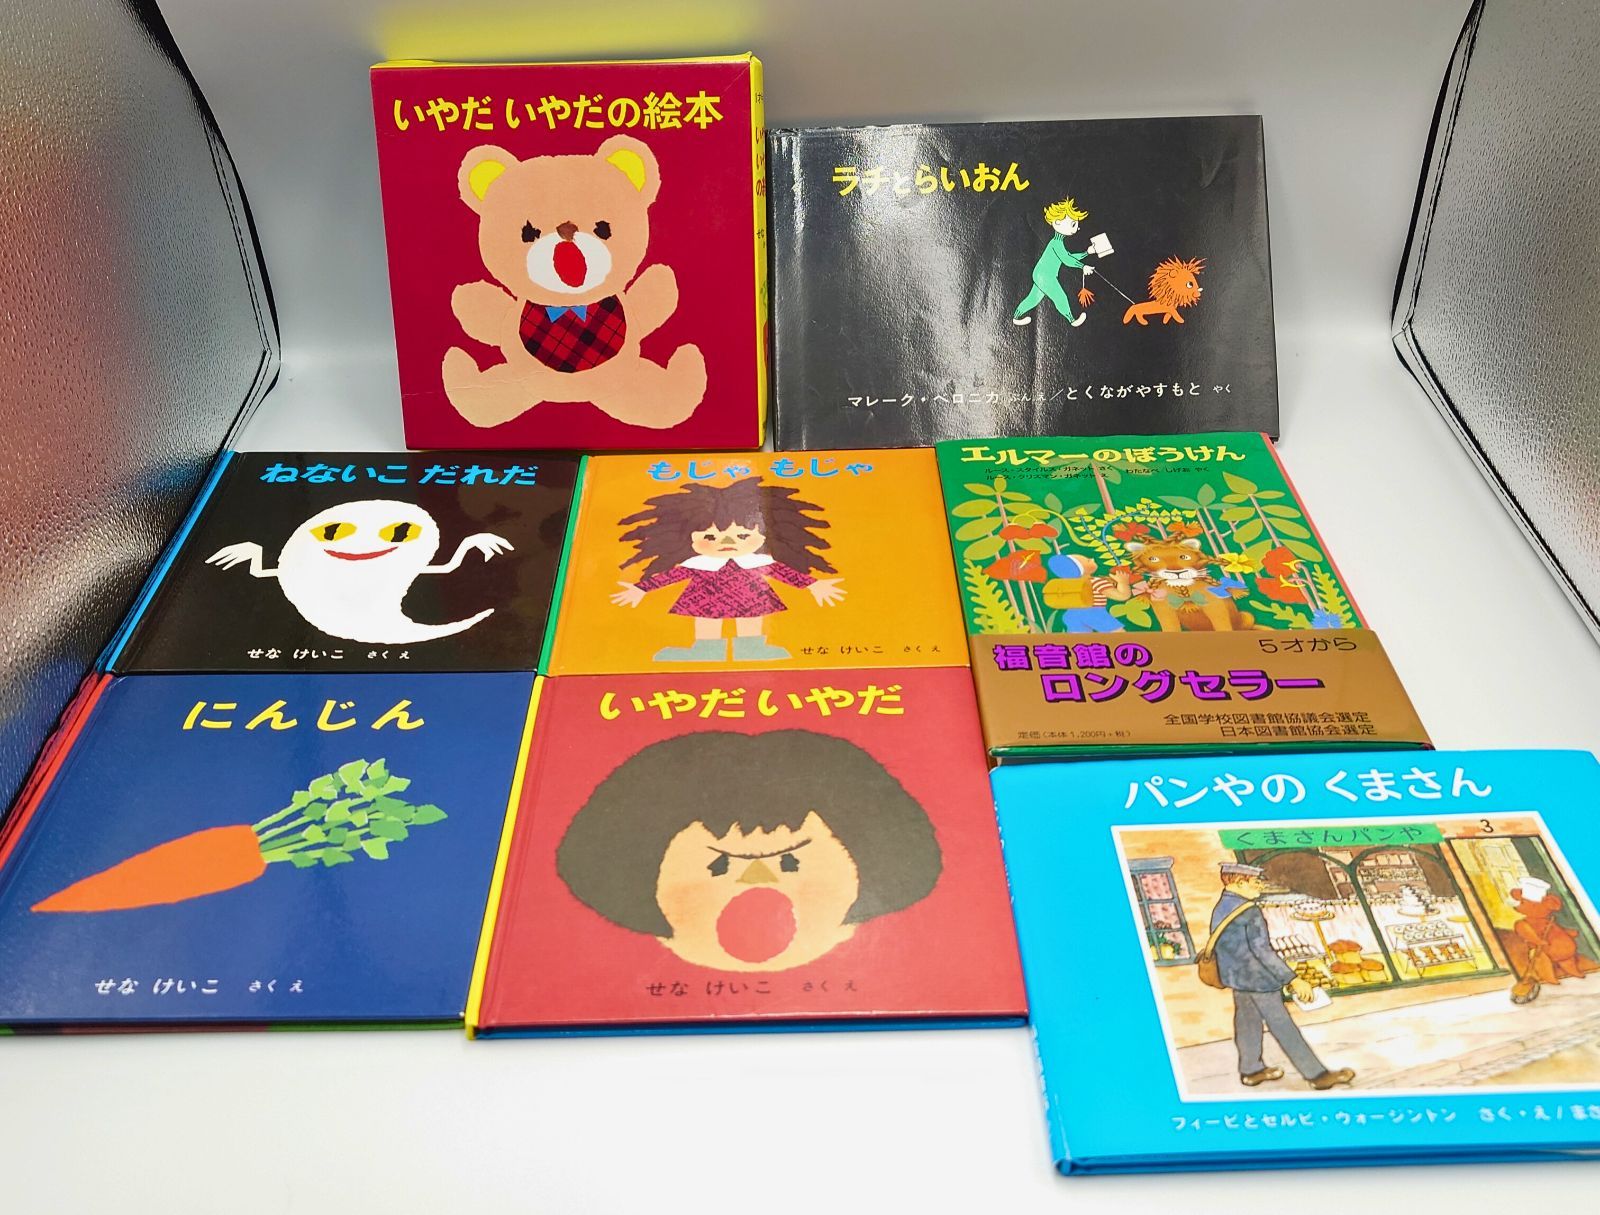 まとめ売り】福音館書店 52冊セット 絵本・児童書 ロングセラー 